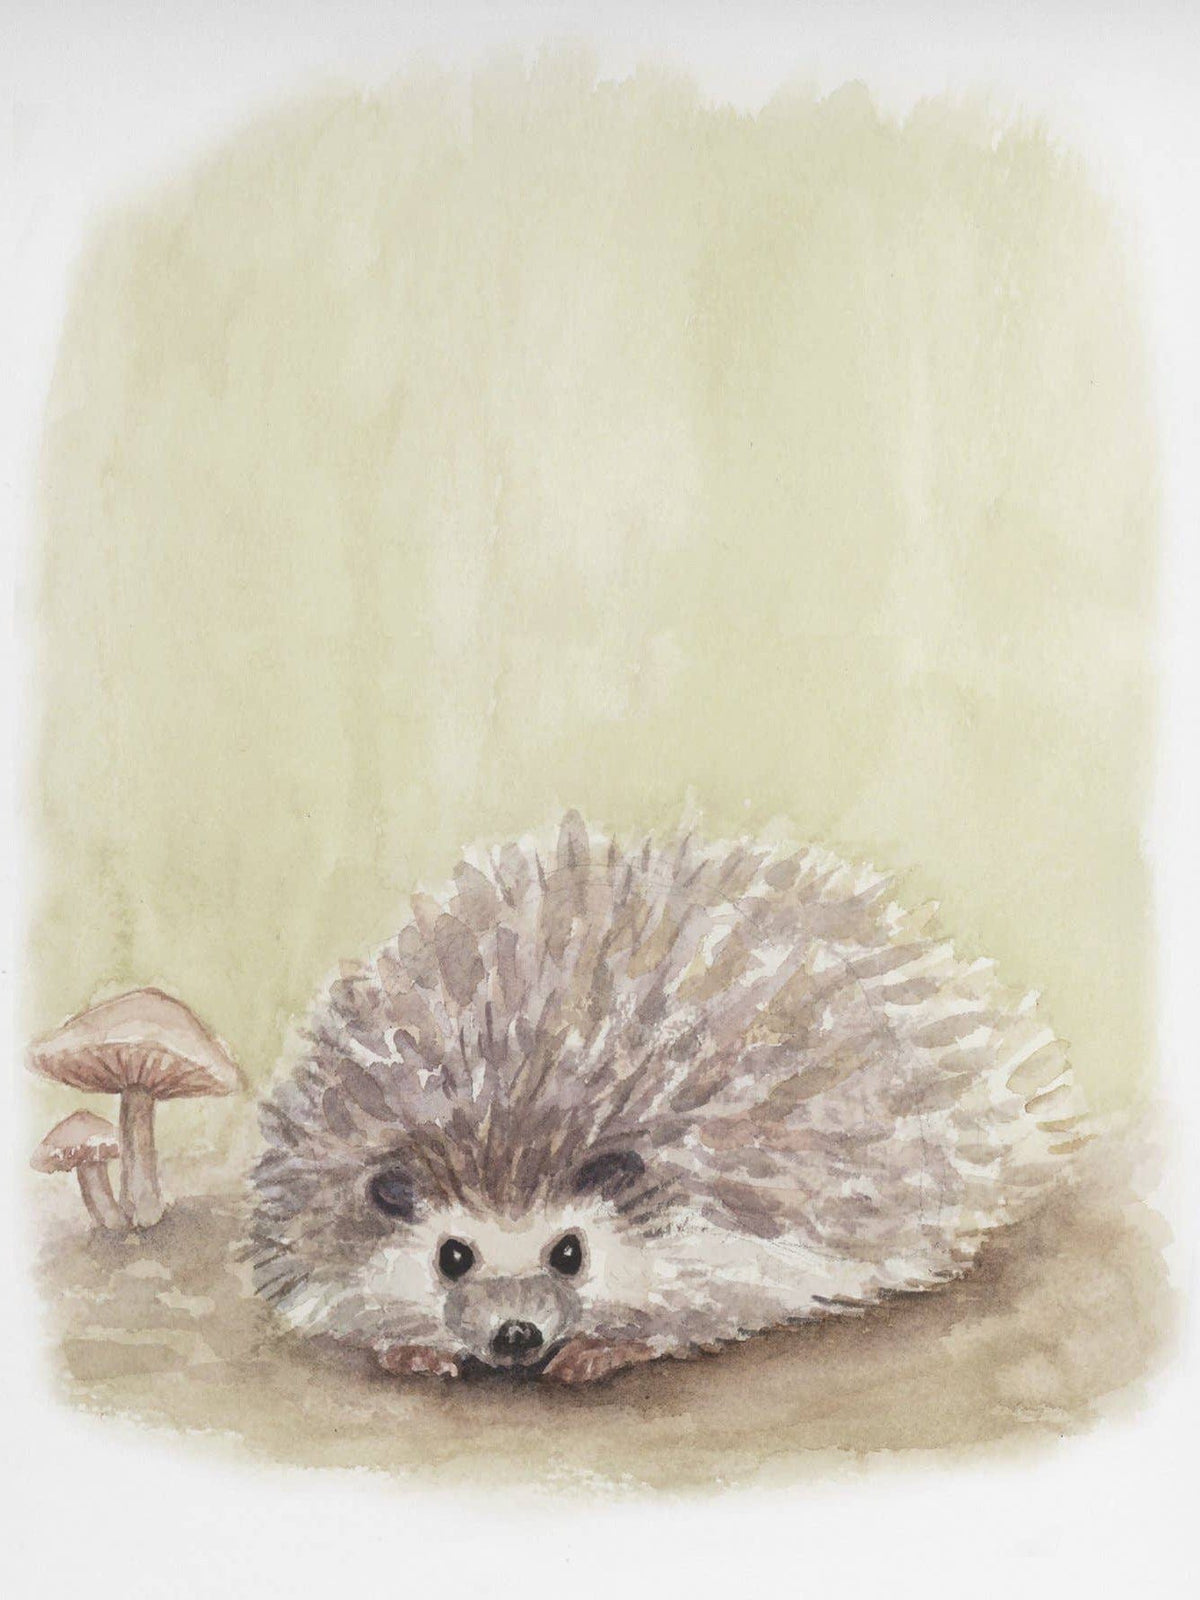 Fox Hollow Studios Giclee Print 8 x 10" (Unframed) Hedgehog Art Print (Our Little Adventures)